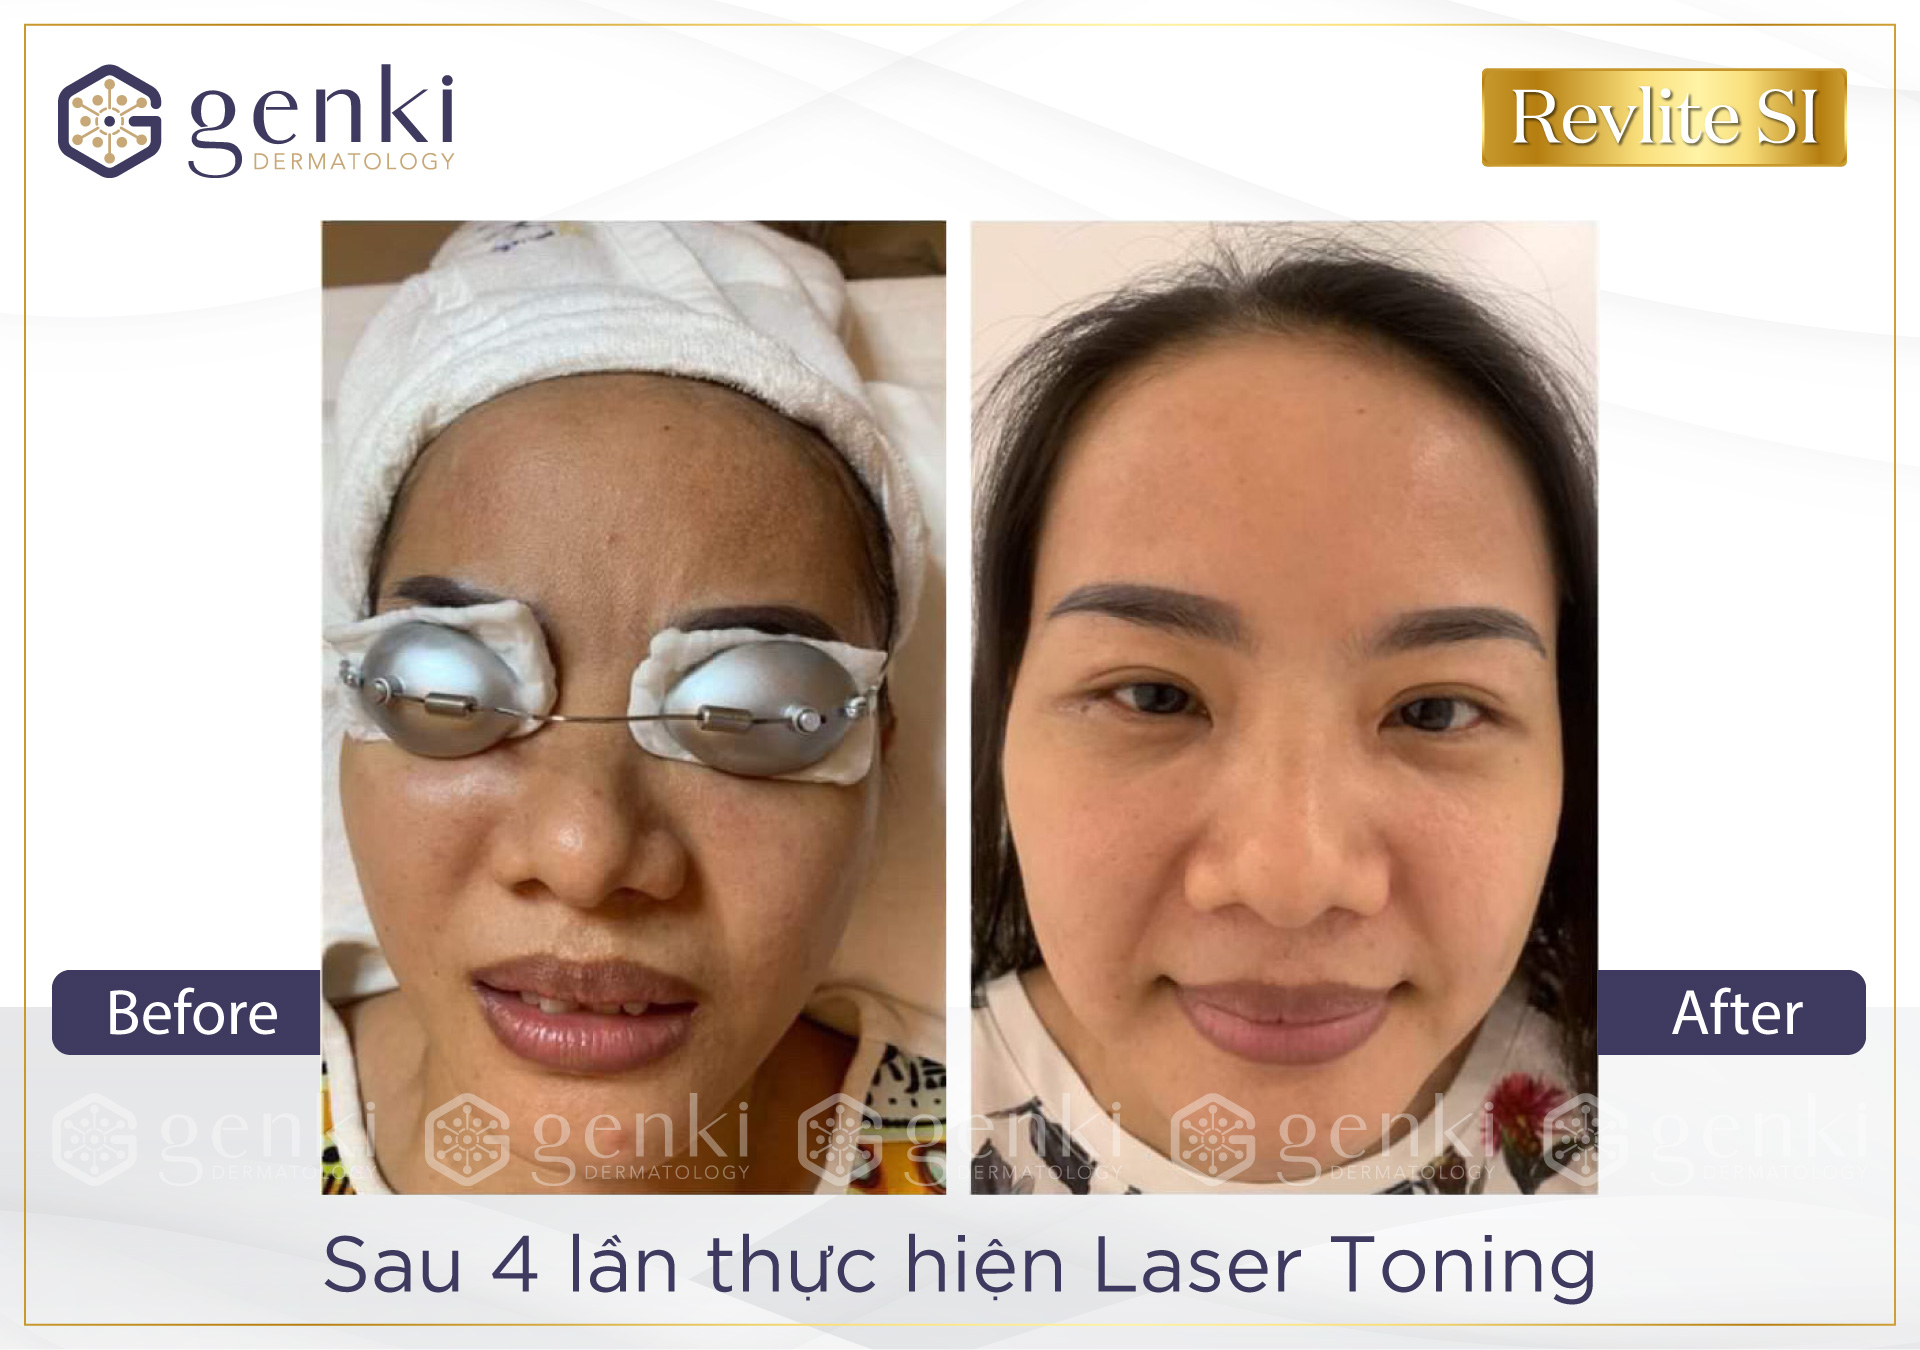 Trẻ hóa da bằng Laser Revlite SI có những ưu điểm nào khiến phái đẹp trầm trồ?